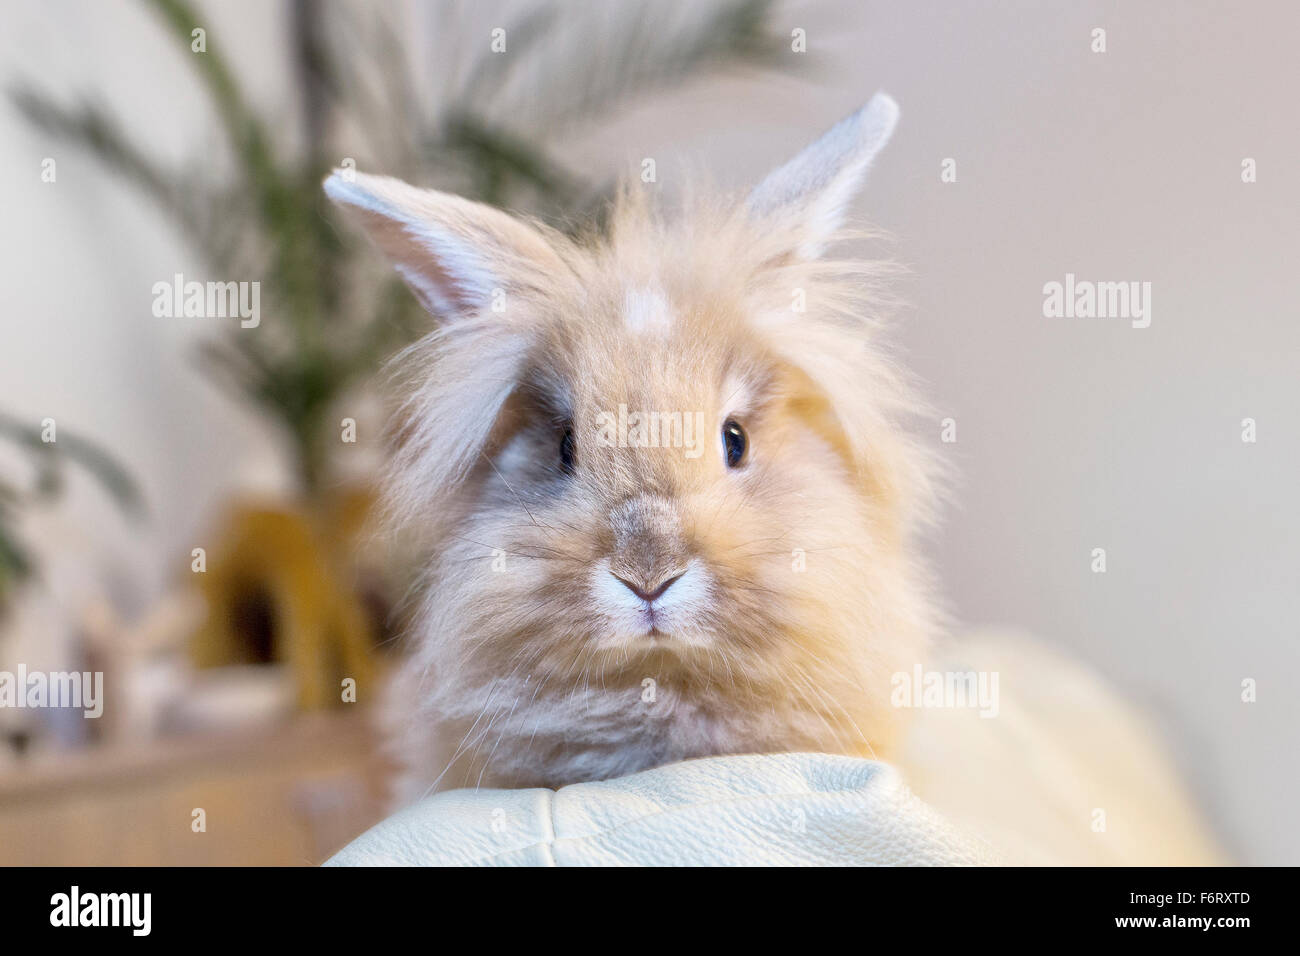 Golden coniglio seduto su una casa divano bianco svolta a guardare lo spazio vuoto. Foto Stock